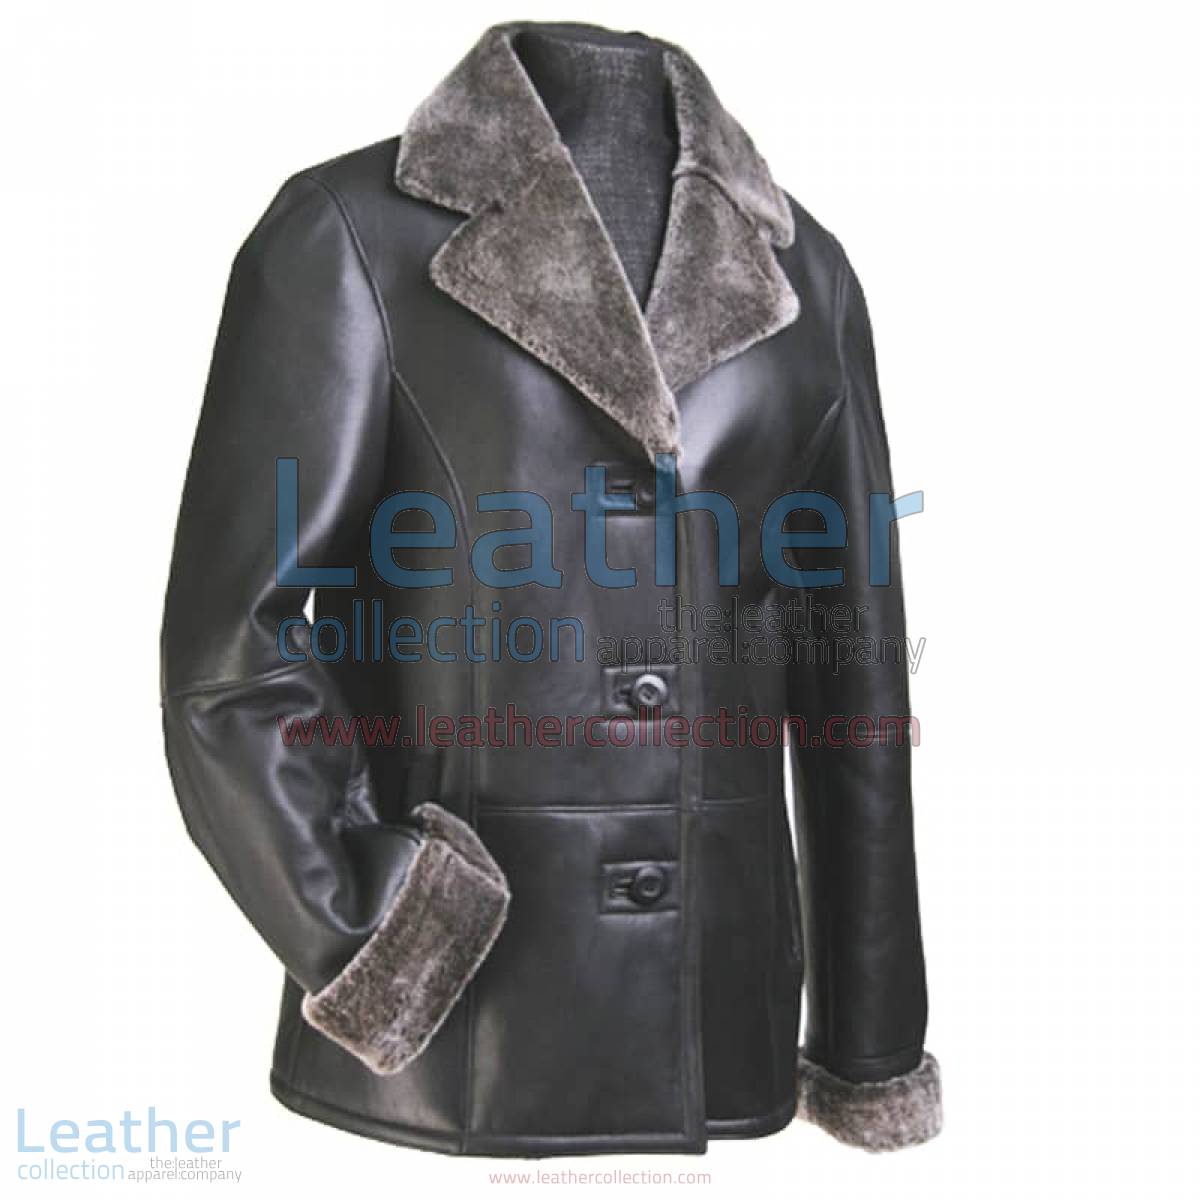 Leather Fur Blazer Women | fur blazer,leather blazer women